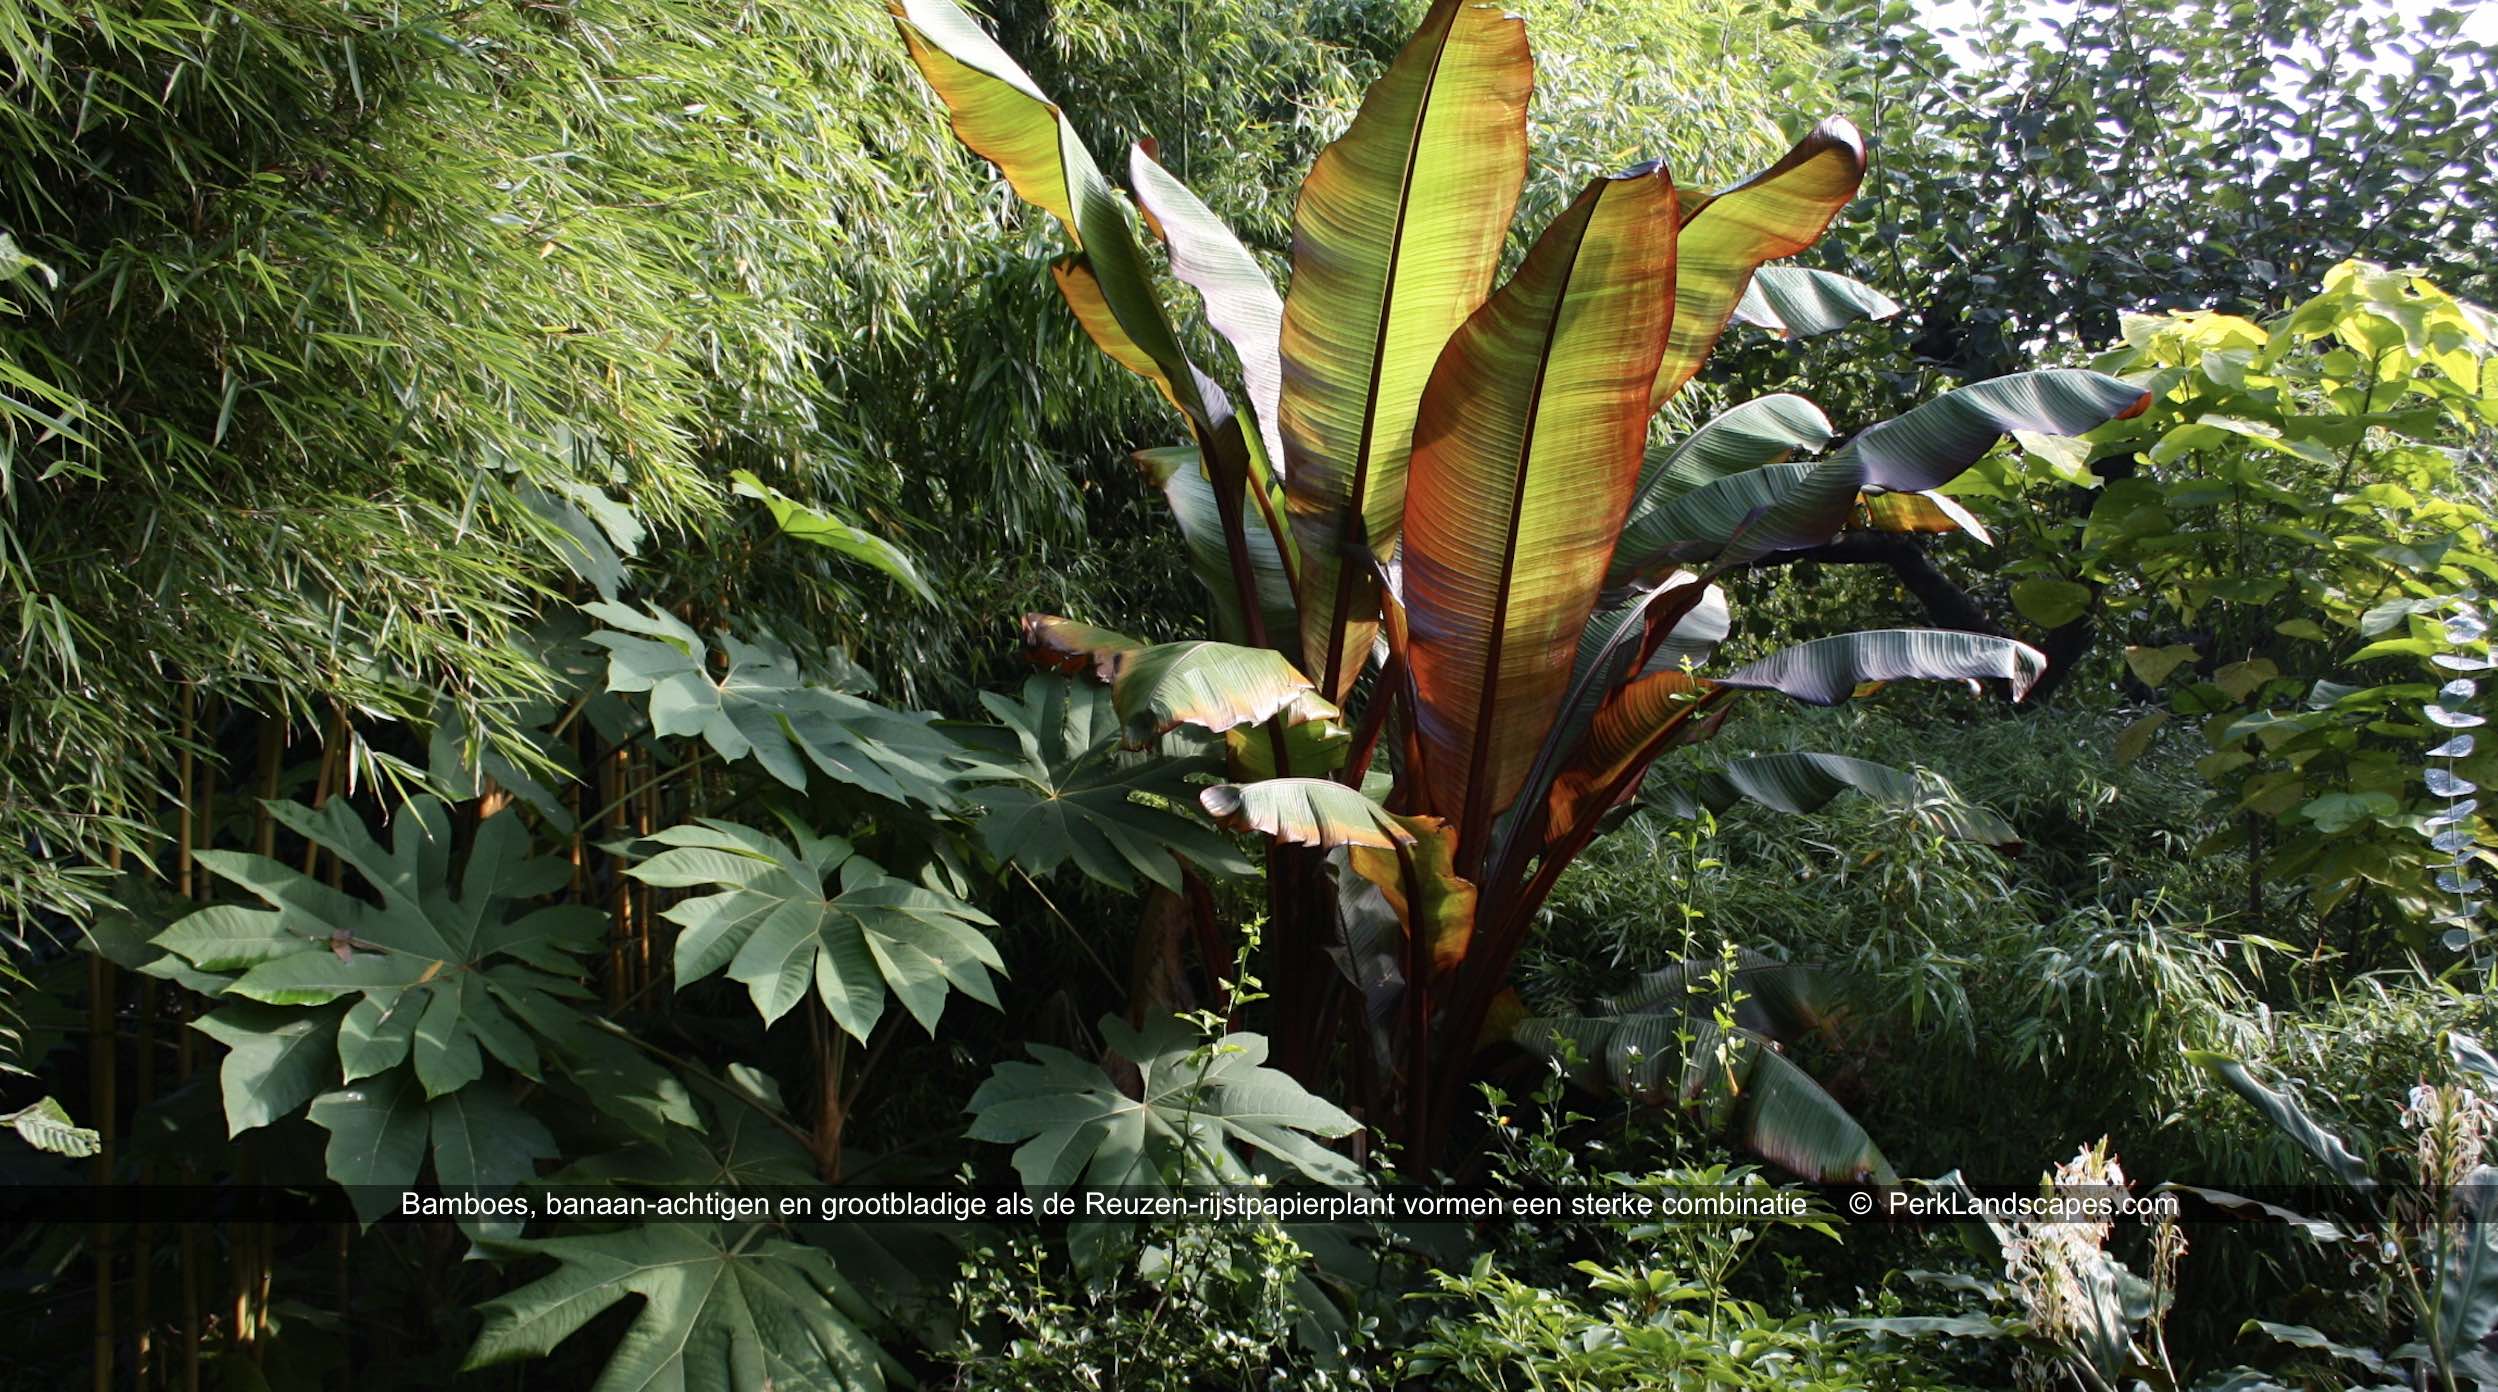  Bamboes banaan achtigen en grootbladige als de Reuzen rijstpapierplant vormen een sterke combinatie PerkLandscapes com